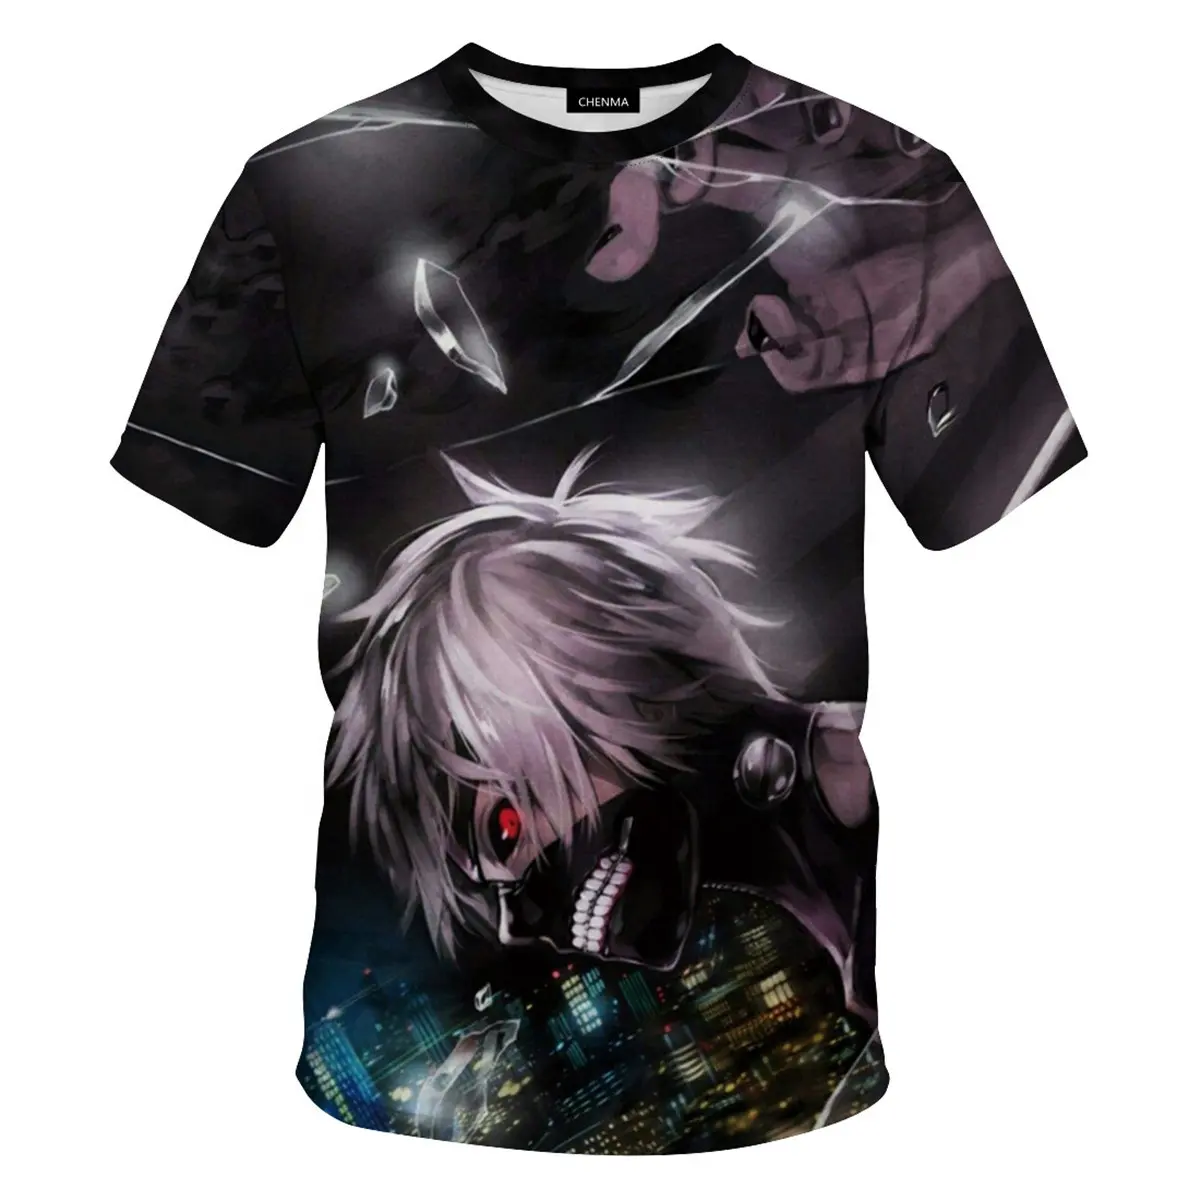 Fantasia cosplay de filme e tv ghoul japonesa 3d, camiseta de anime com estampa de manga curta